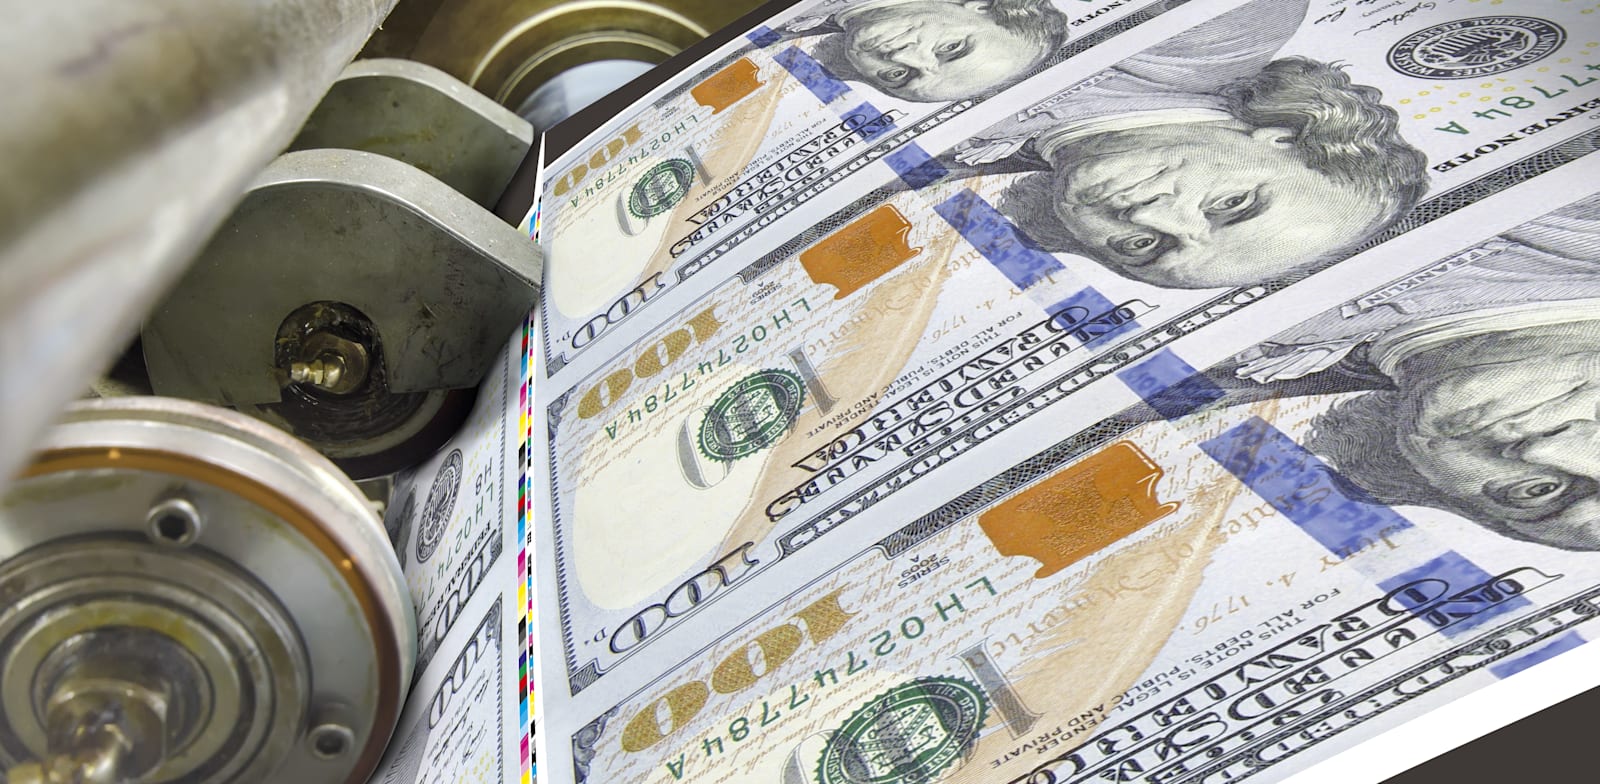 הדפסת דולרים בארה"ב / צילום: Shutterstock